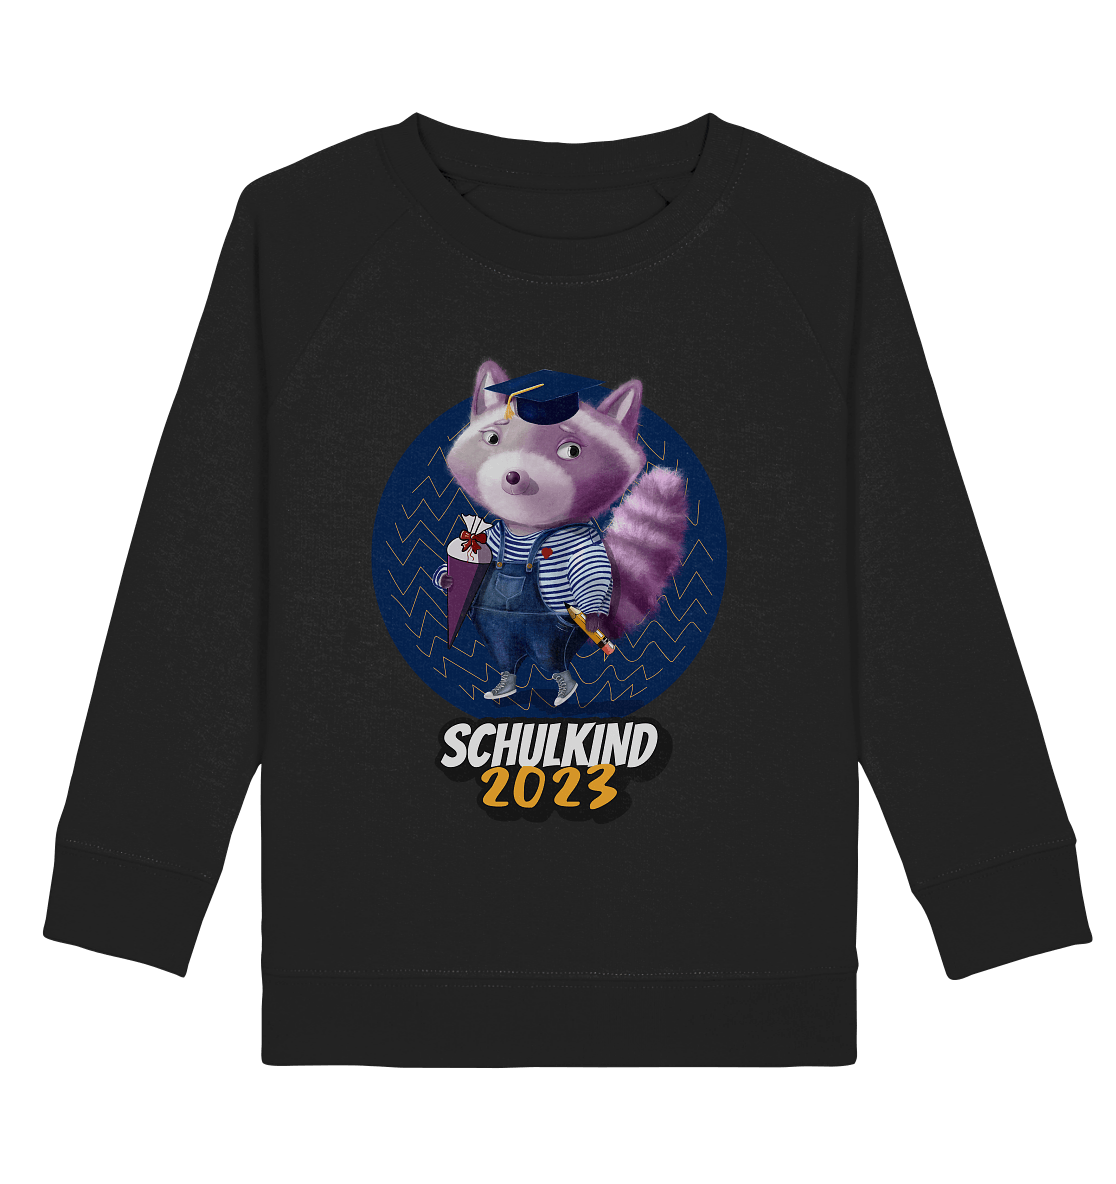 Schulkind-2023-Sweatshirt-Waschbaer-mit-Zuckertuete-schwarz